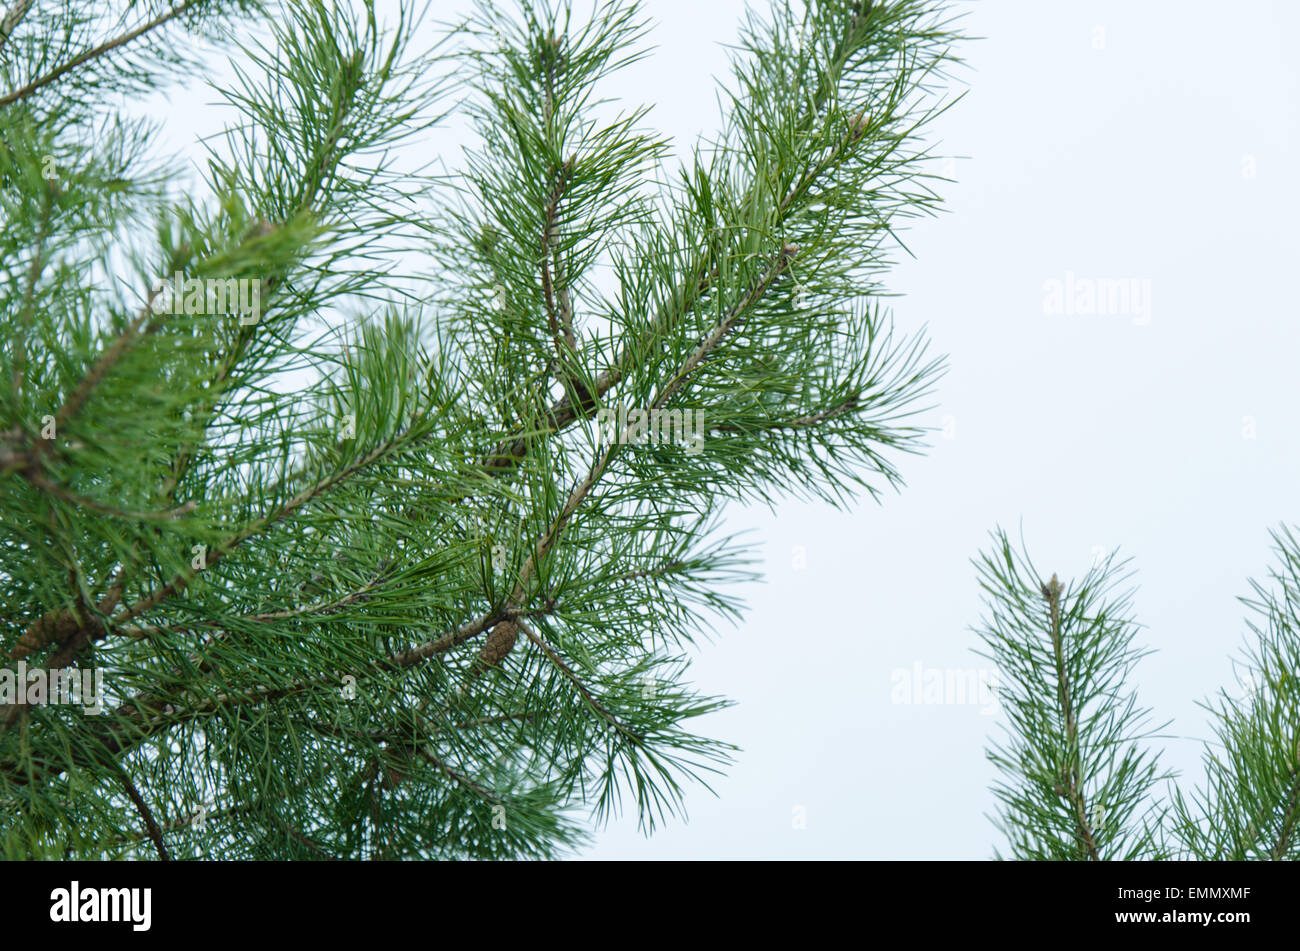 A fir tree Stock Photo